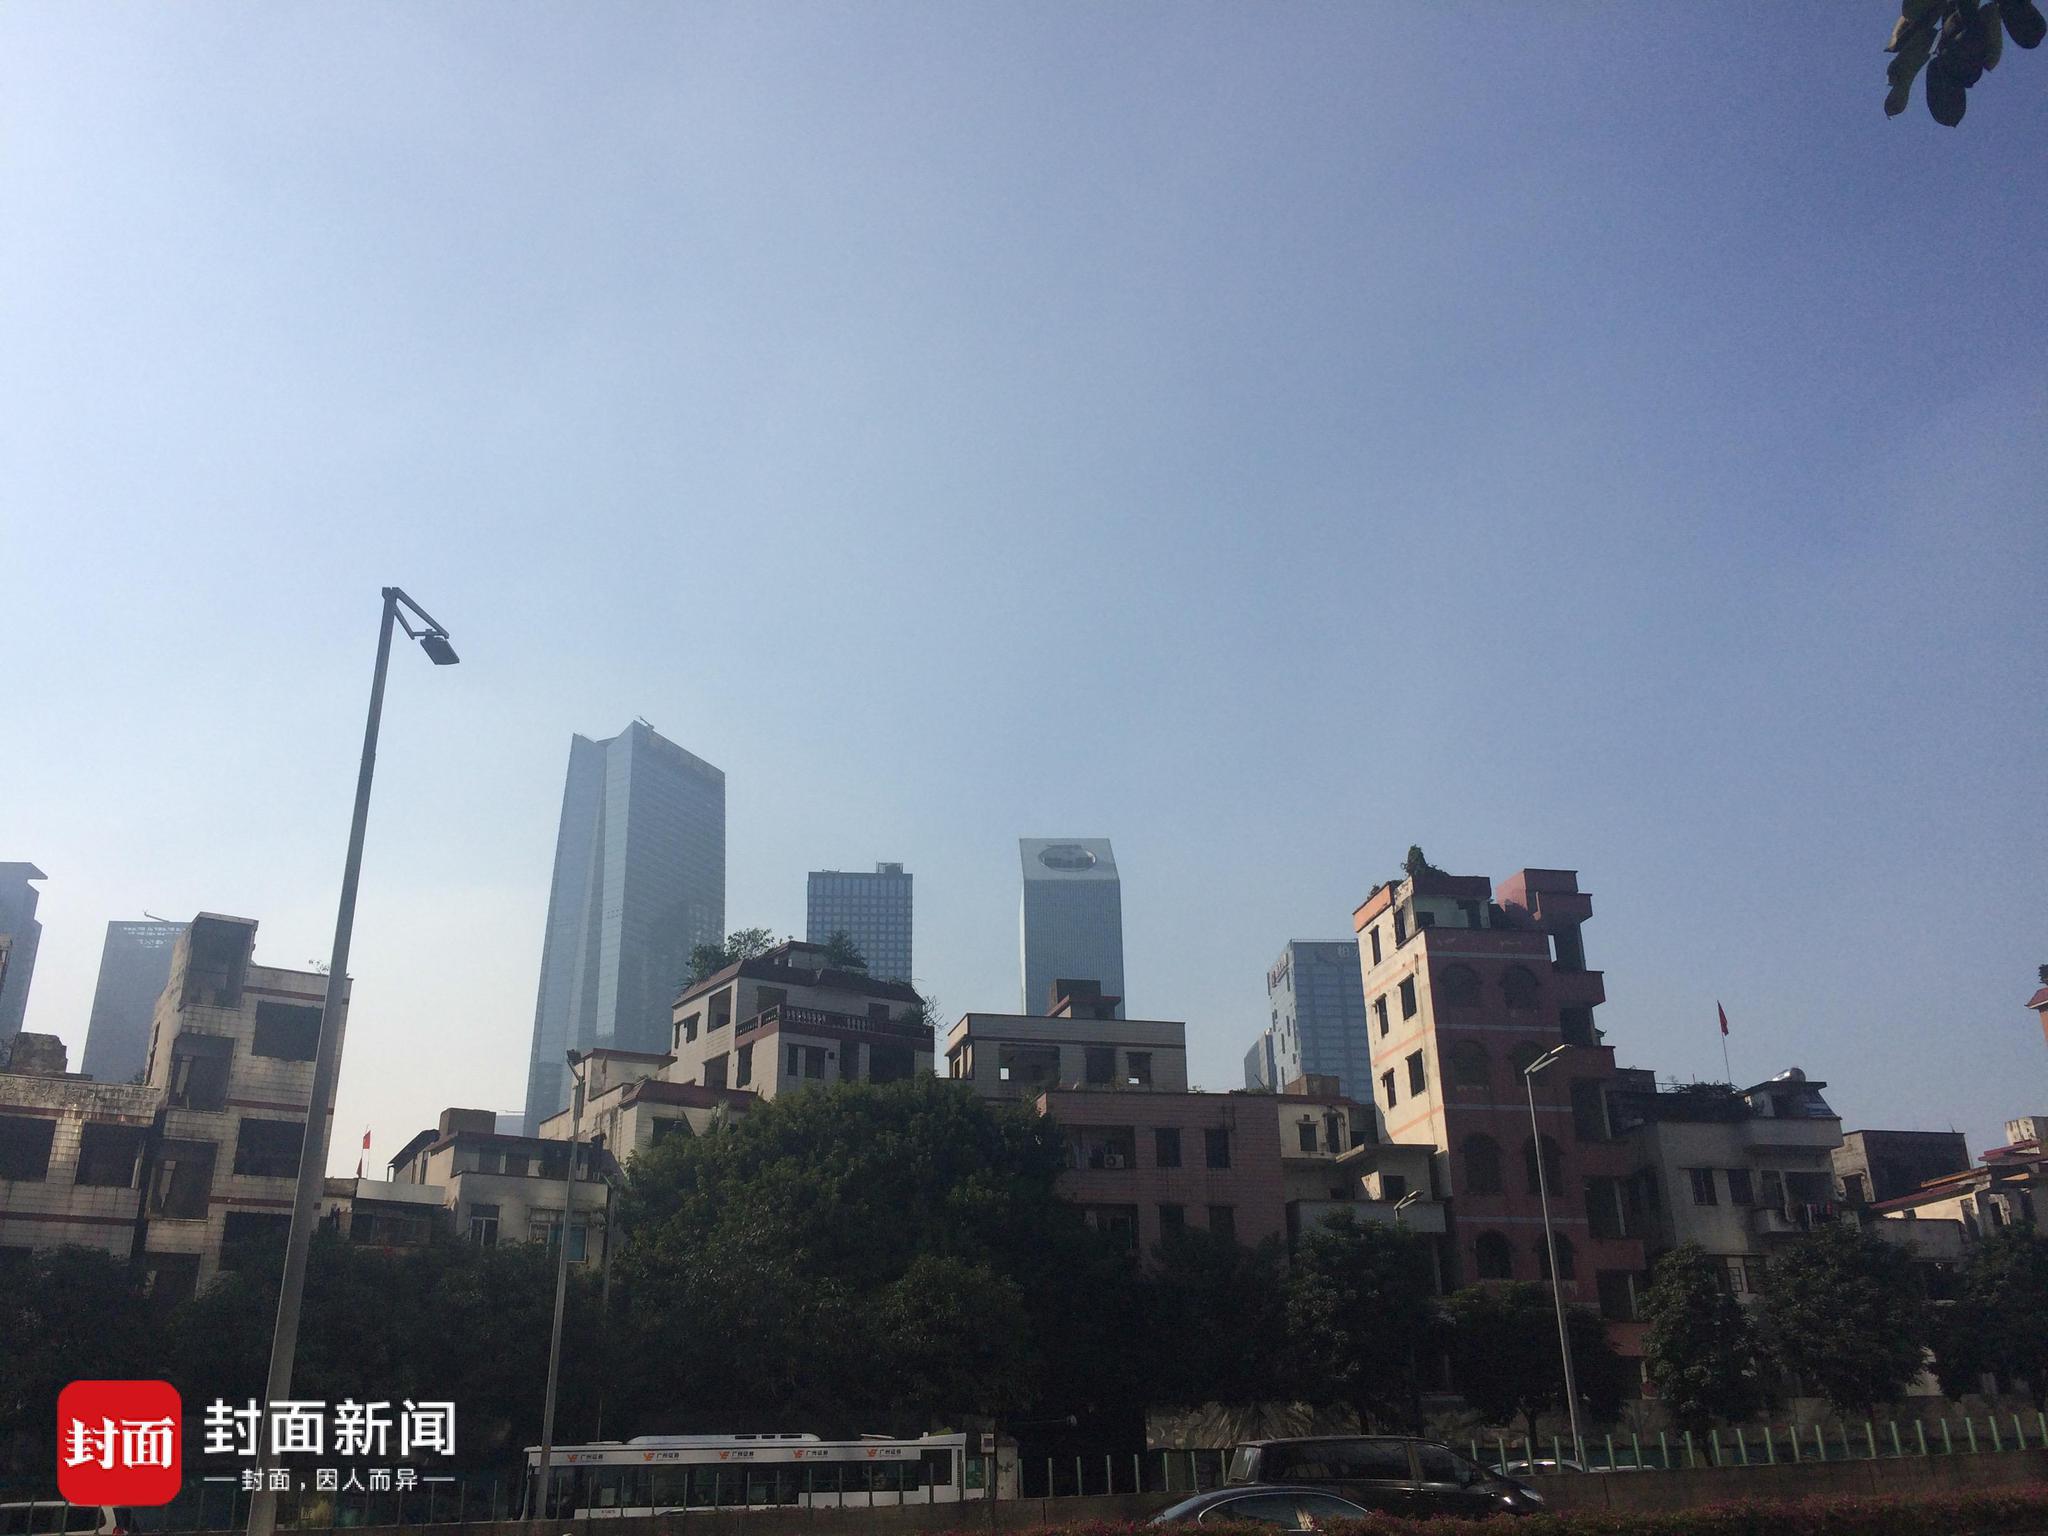 廢屋背靠珠江新城高樓。